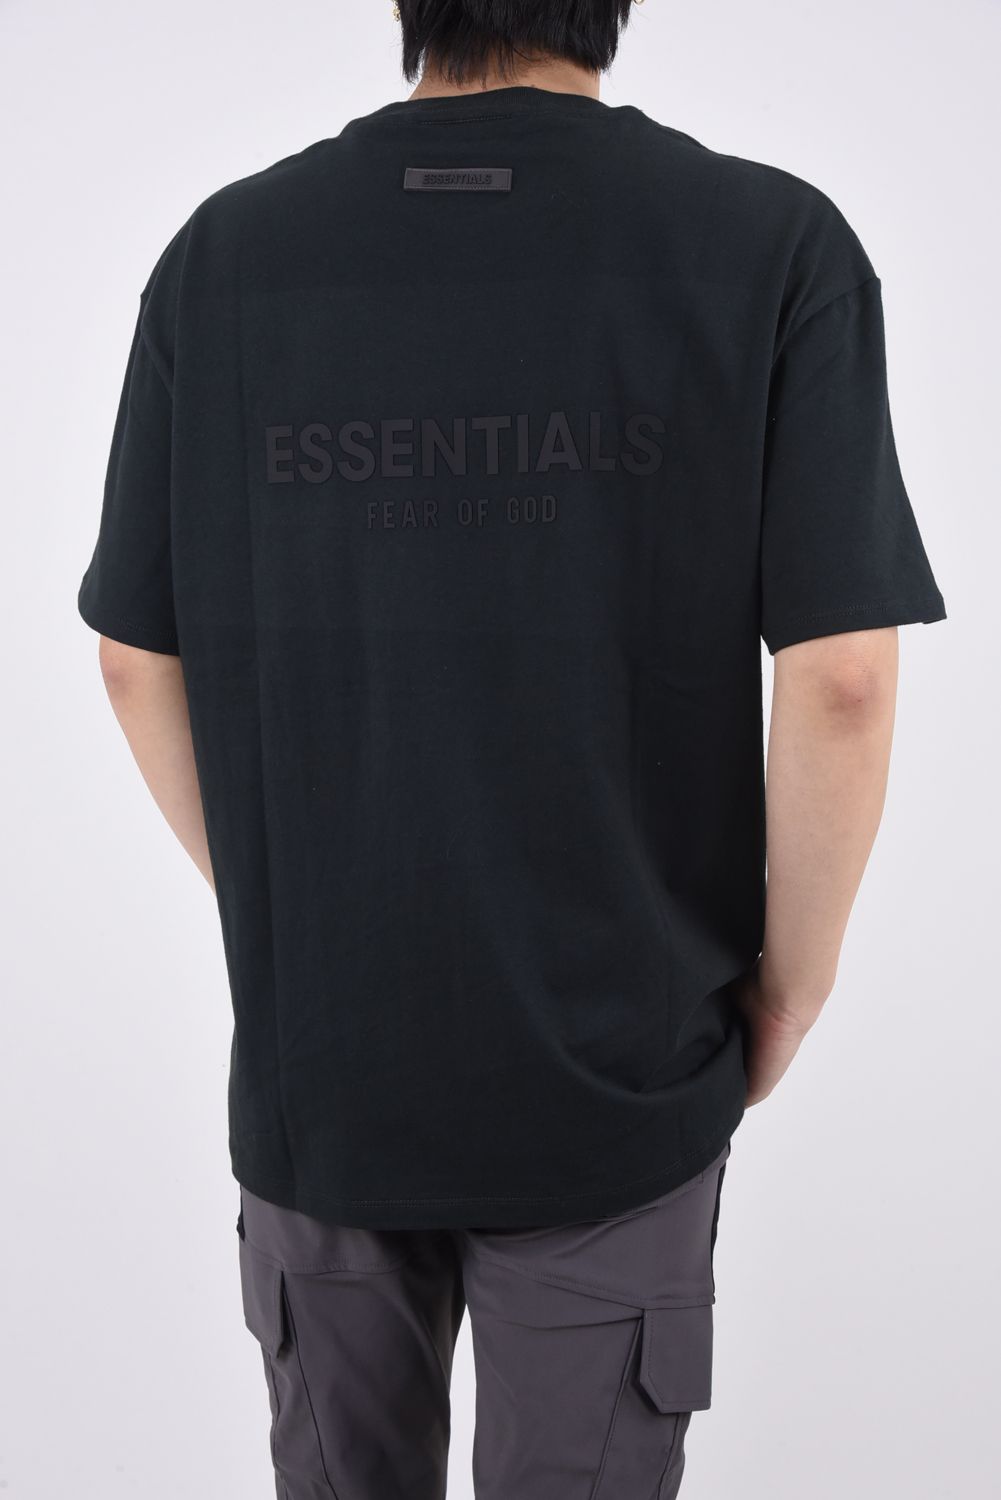 FOG Essentials エフオージー エッセンシャルズ FRONT LOGO V-NECK S/S TEE 125SP234110F フロントロゴ Vネック 半袖Tシャツ カットソー ブラック